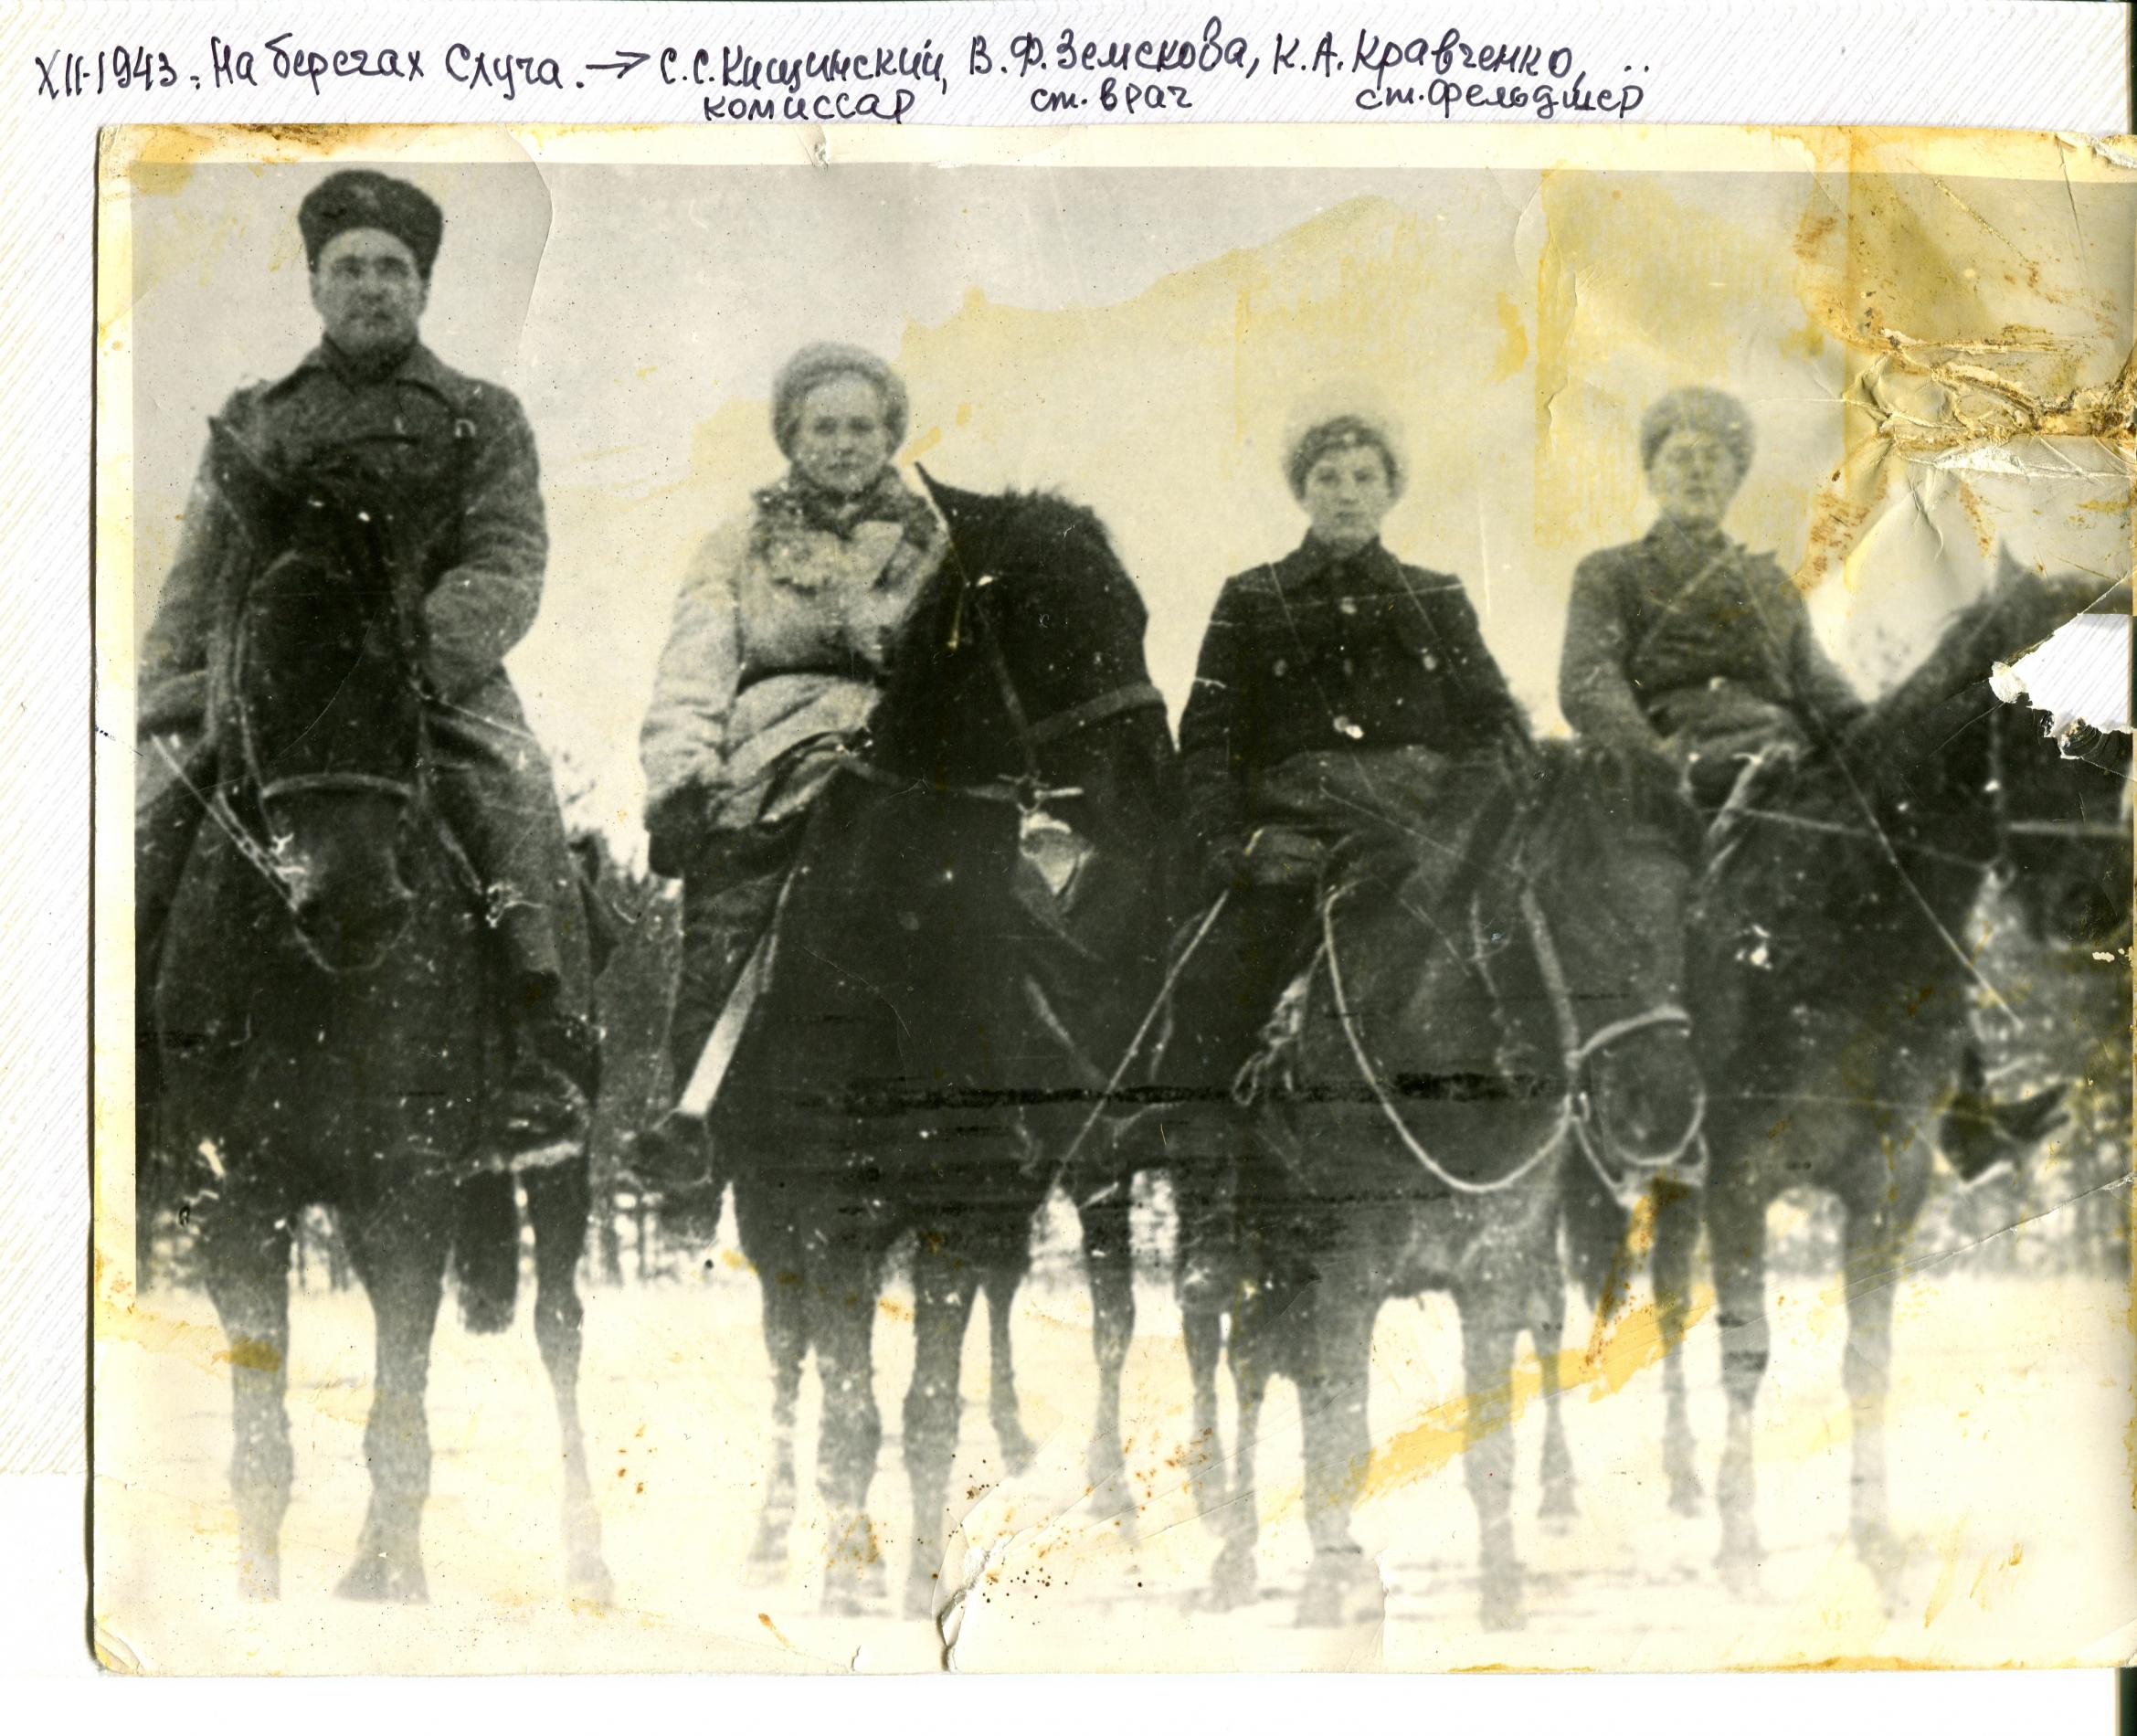 Партизаны кавалерийского соединения М.И. Наумова на берегу р. Случь, декабрь 1943 года